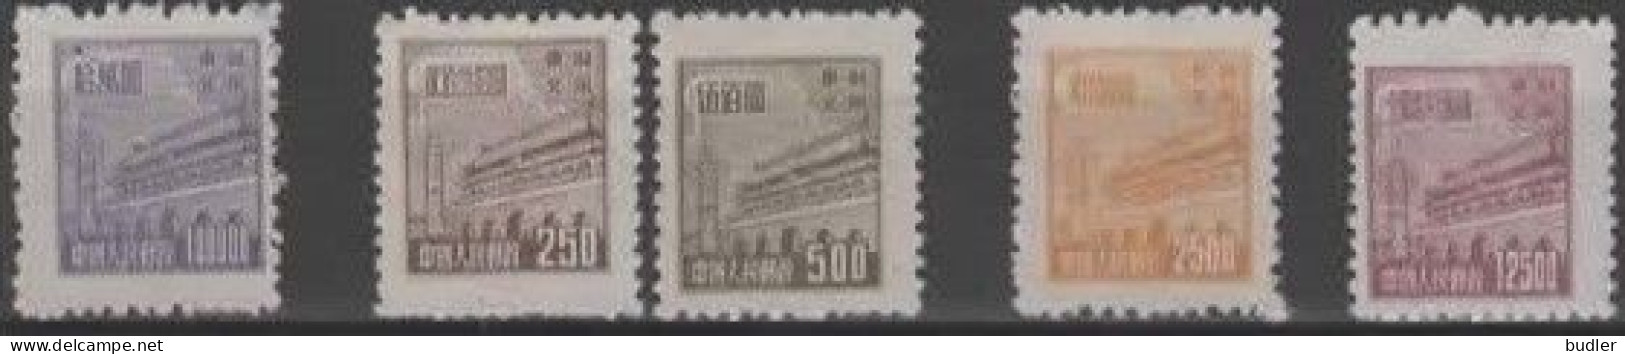 Noord-Oost CHINA [13] :1950: Y.165-67,169,171* :  100.000 / 250 / 500 / 2.500 12.500 $ : Porte De La Paix Céleste E - Chine Du Nord-Est 1946-48